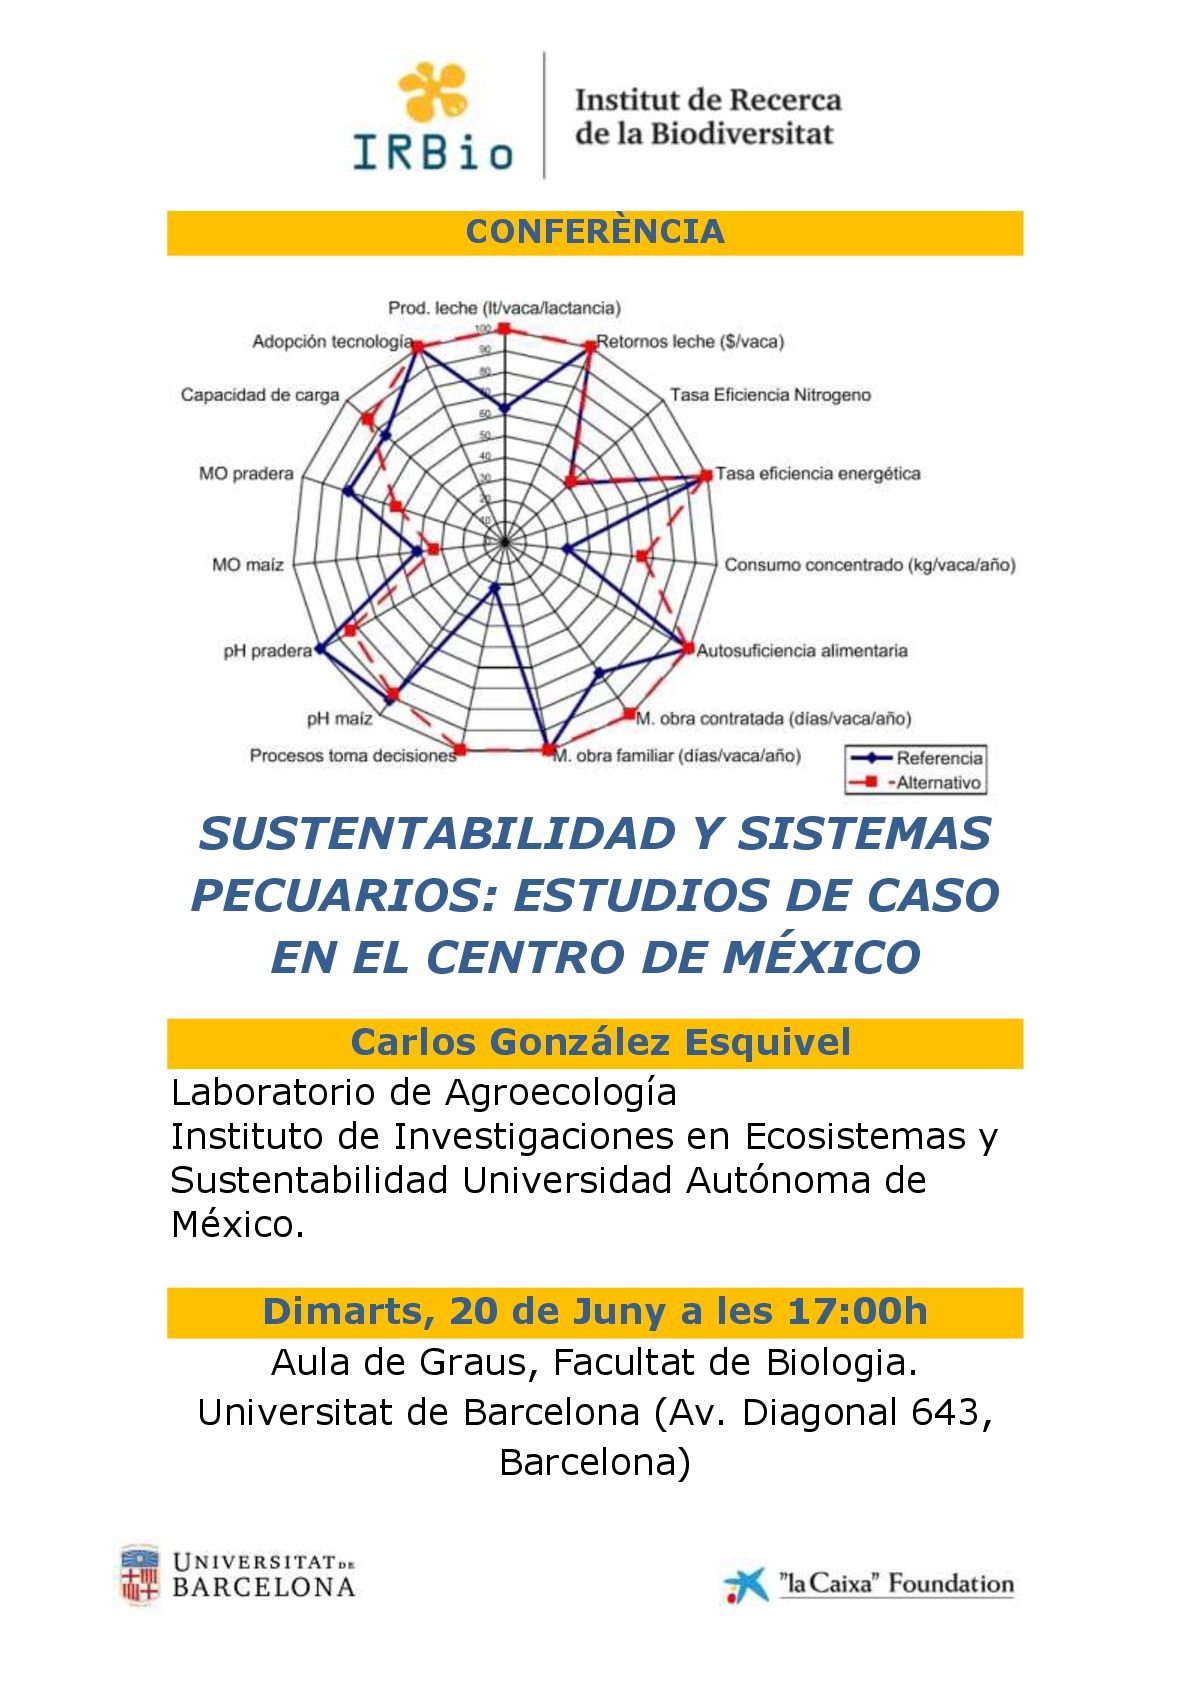  Sustentabilidad y sistemas pecuarios: Estudios de caso en el Centro de México